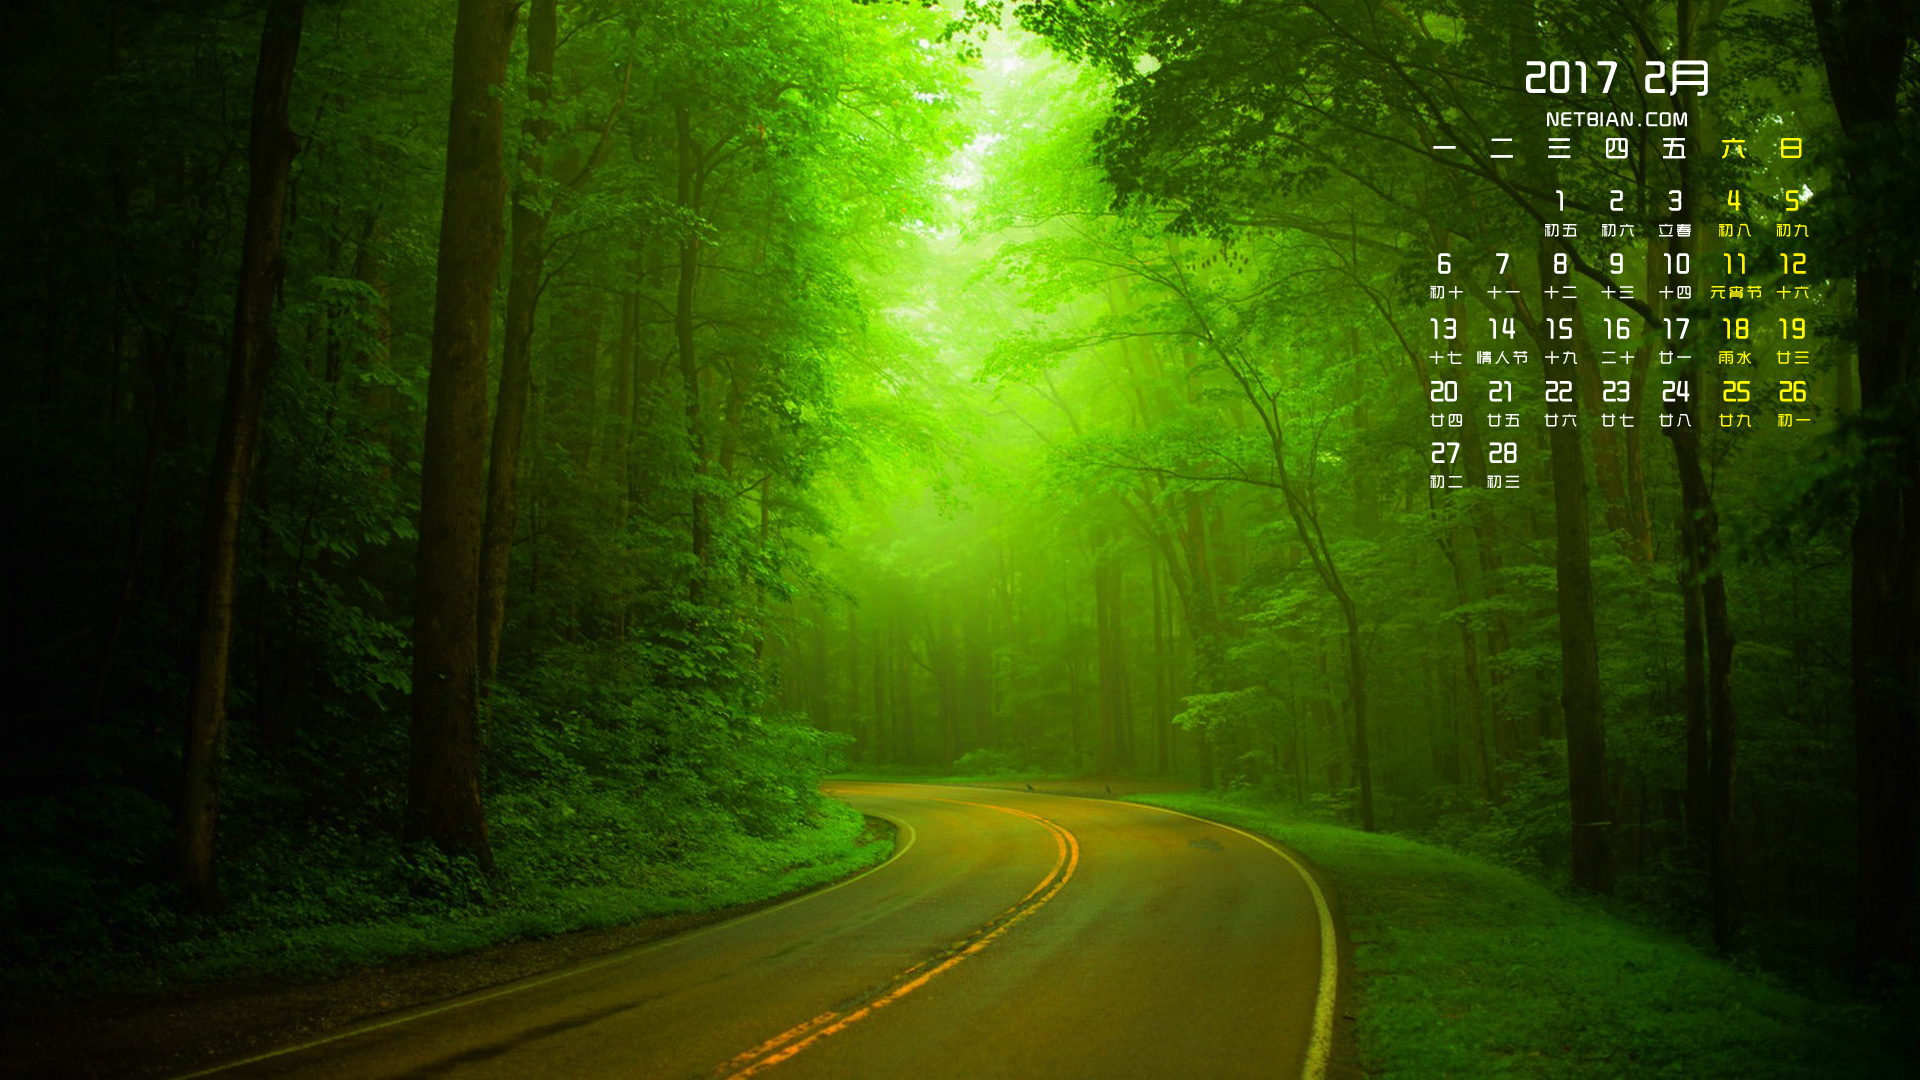 绿色森林公路2017年2月日历风景桌面壁纸